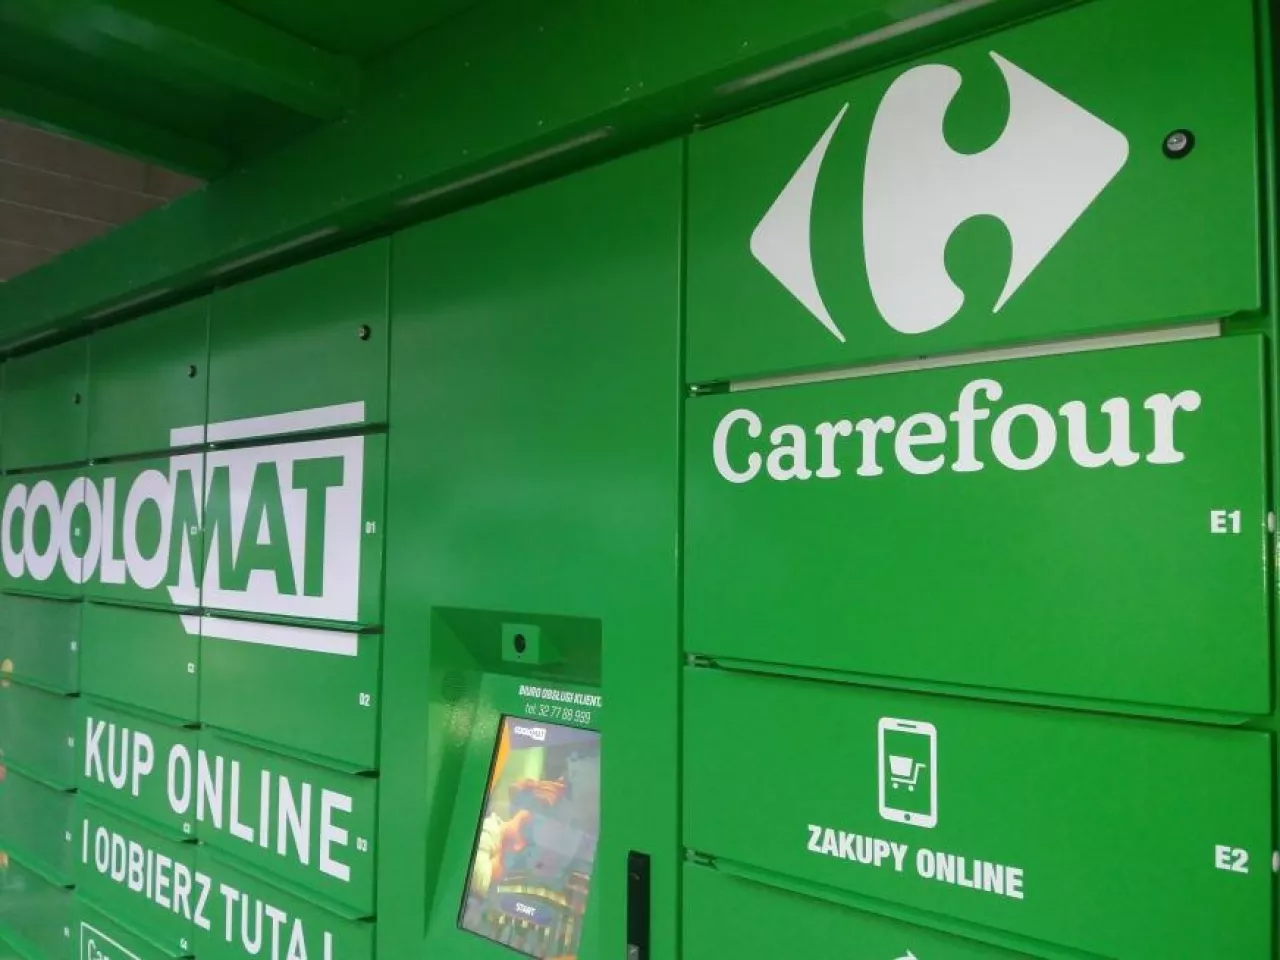 Na zdj. Coolomat, w którym odbierać można zakupy spożywcze zrobione w e-sklepie sieci Carrefour (fot. wiadomoscihandlowe.pl)